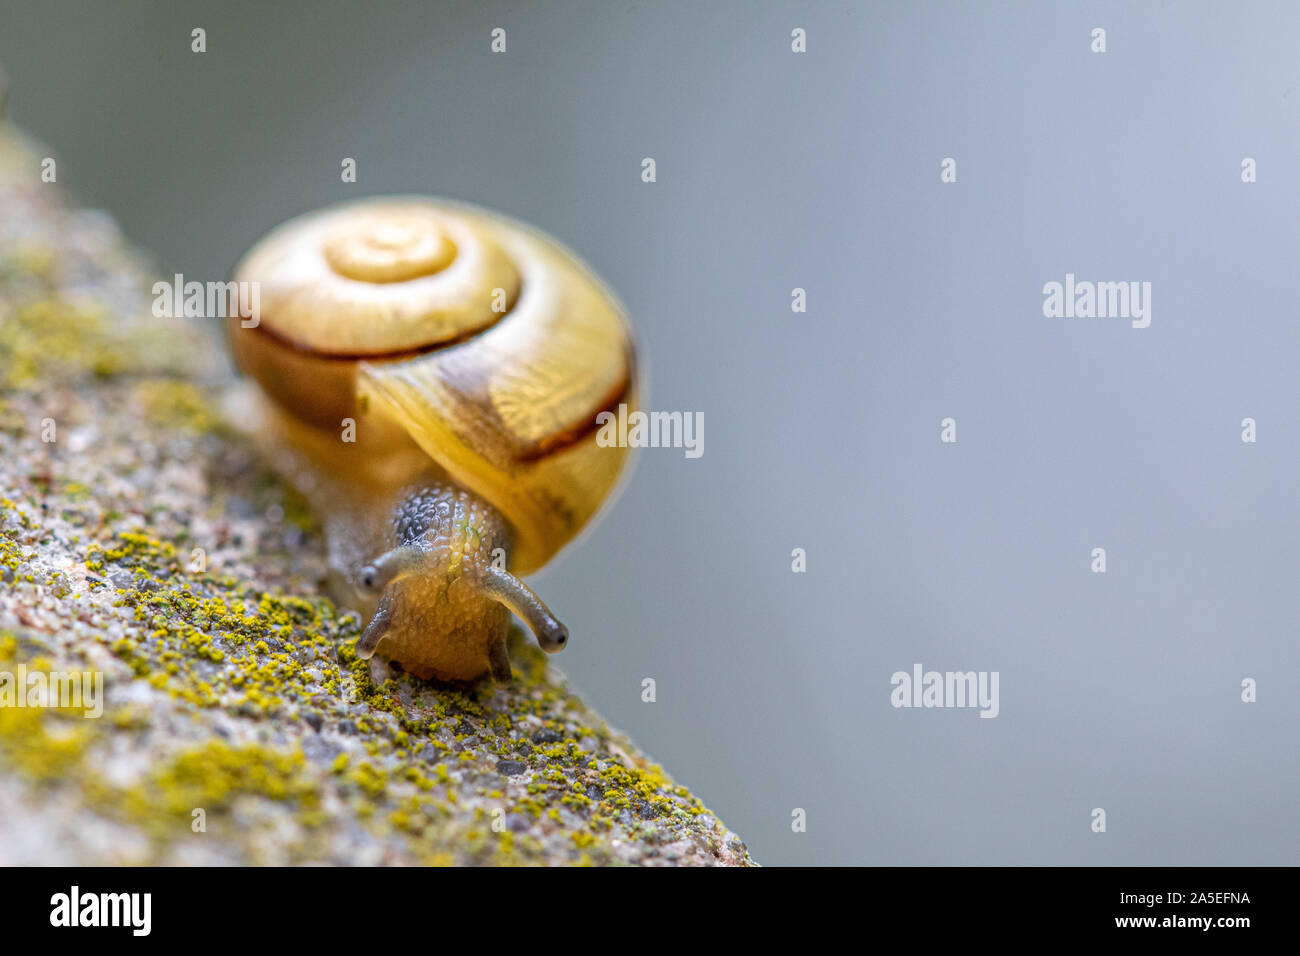 Un petit escargot jaune avec une coquille d'escargot rampe sur un tas de béton Banque D'Images